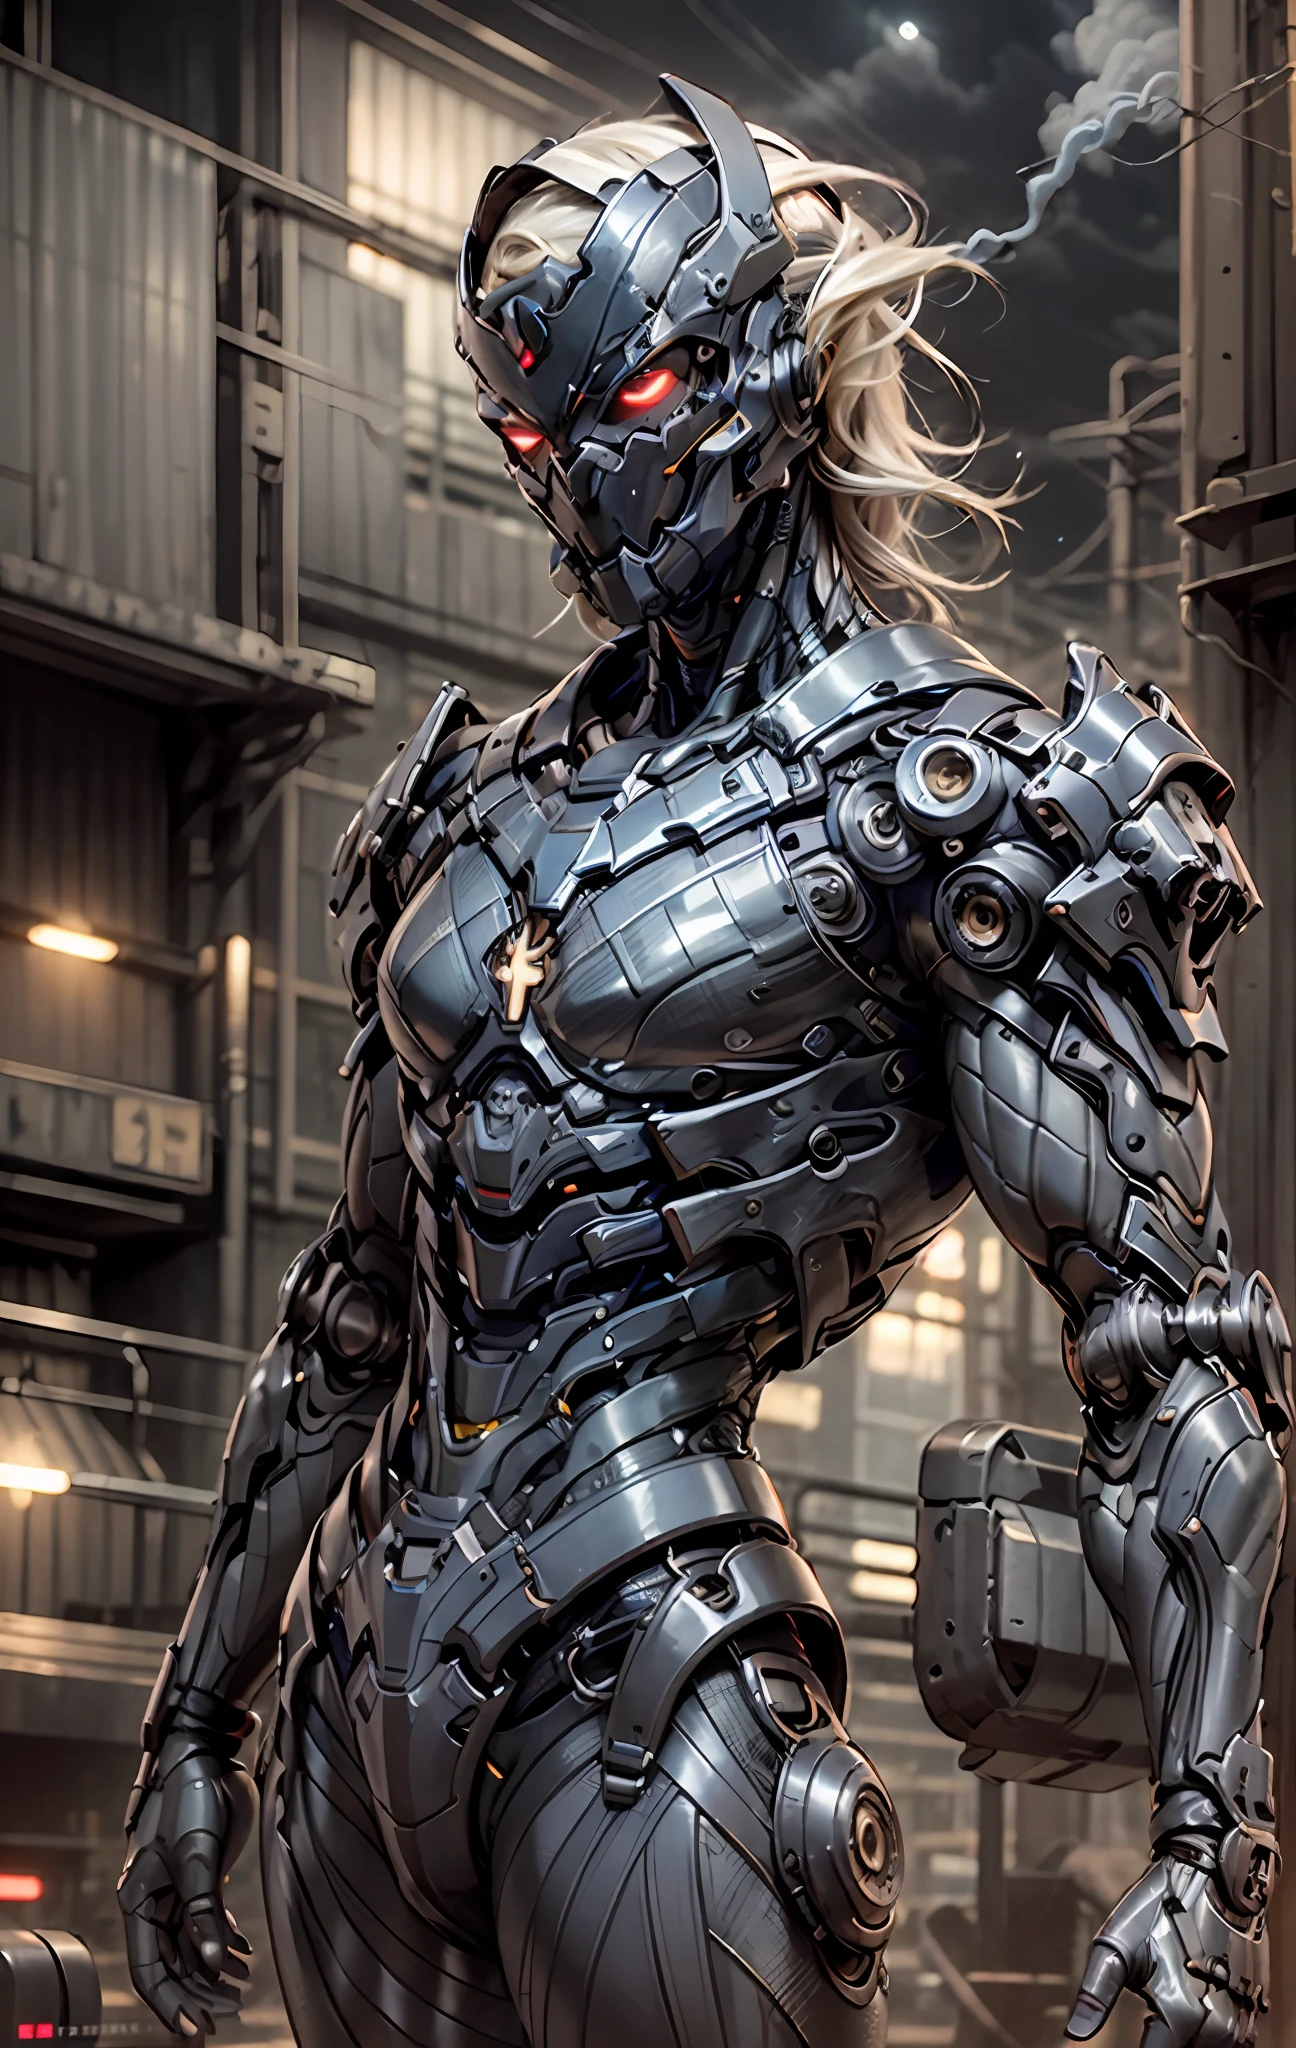 eine wunderschöne Cyborg-Kriegerin im Style-RustMagic, cyberpunk augmentation, cyberware, cyborg, Kohlefaser, Chrom, Implantate, Metallschädel, Cyber-Plattenrüstung, (dunkle Atmosphäre:1.2), (Nebel & Rauch), (dunkle Nacht:1.3), Narben, (dunkles mittellanges zerzaustes Haar:1.1), (Lidschatten:1.1), (wunderschön detailliertes Leuchten:1.2), (Filmische Beleuchtung), komplizierte Details, highres, runde Augen, detaillierte Gesichtszüge, scharfer Fokus, Glatt, ästhetisch, detaillierter dunkler industrieller Fabrikhintergrund, stilvolle Pose, dynamische pose, (Abonnieren), (opt-6000:0.9), maskiert, blaues Spandex mit roten Streifen